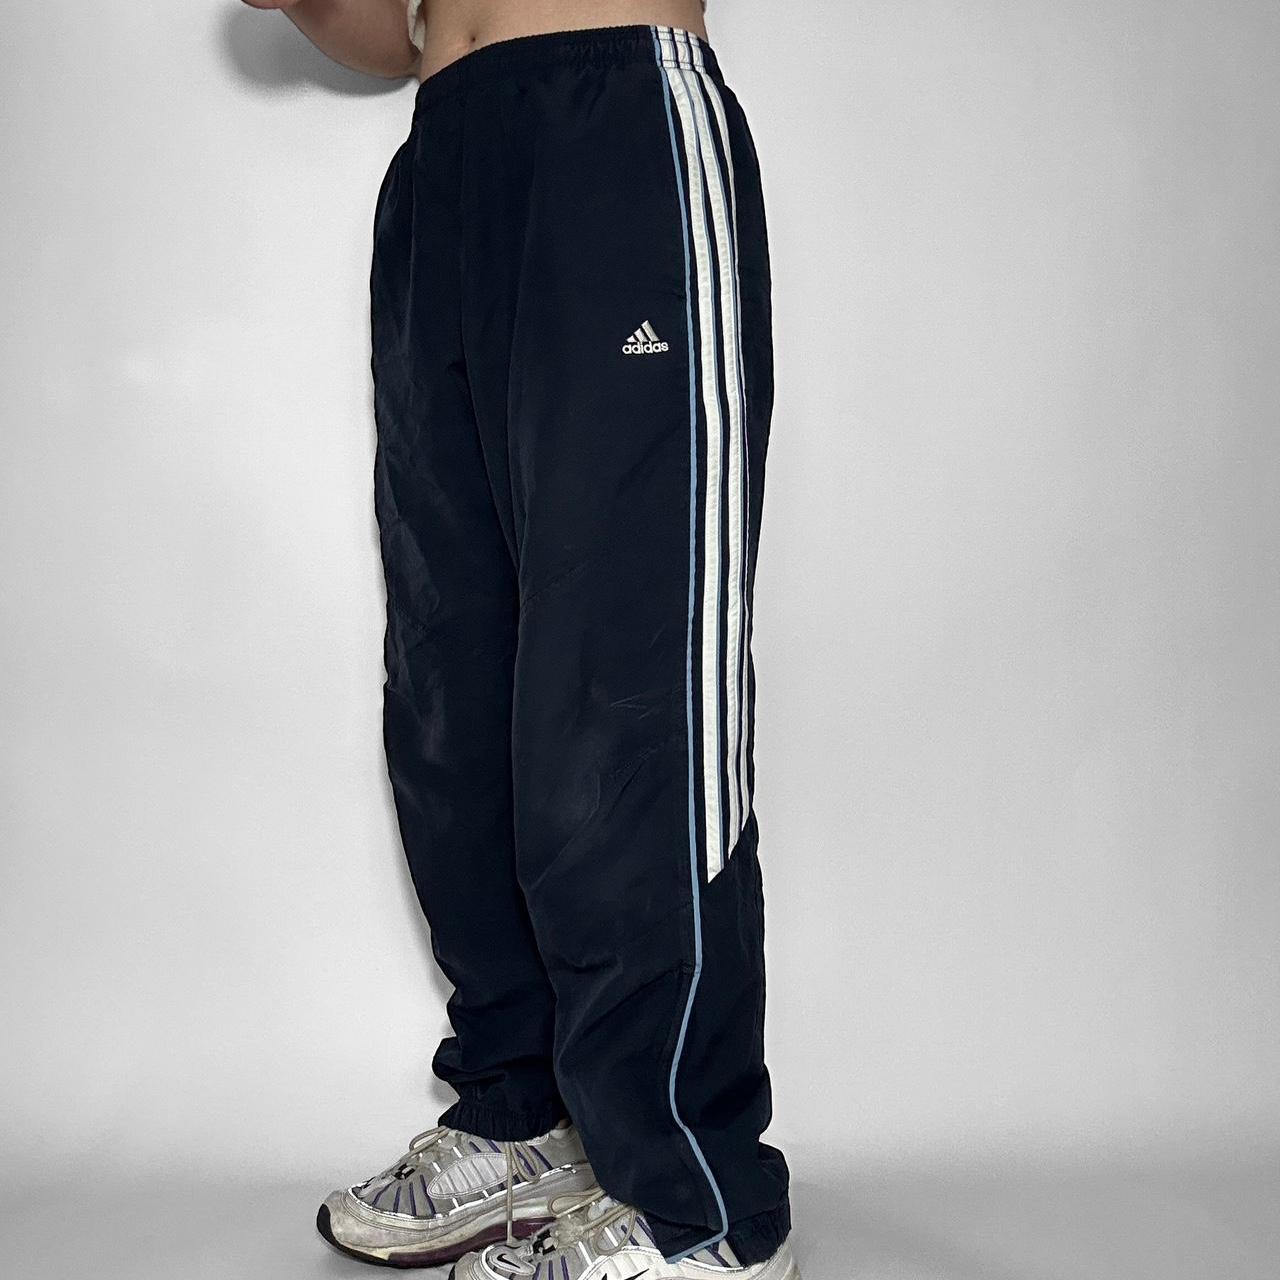 Balenciaga x Adidas Pantashoes Track Pants - Farfetch